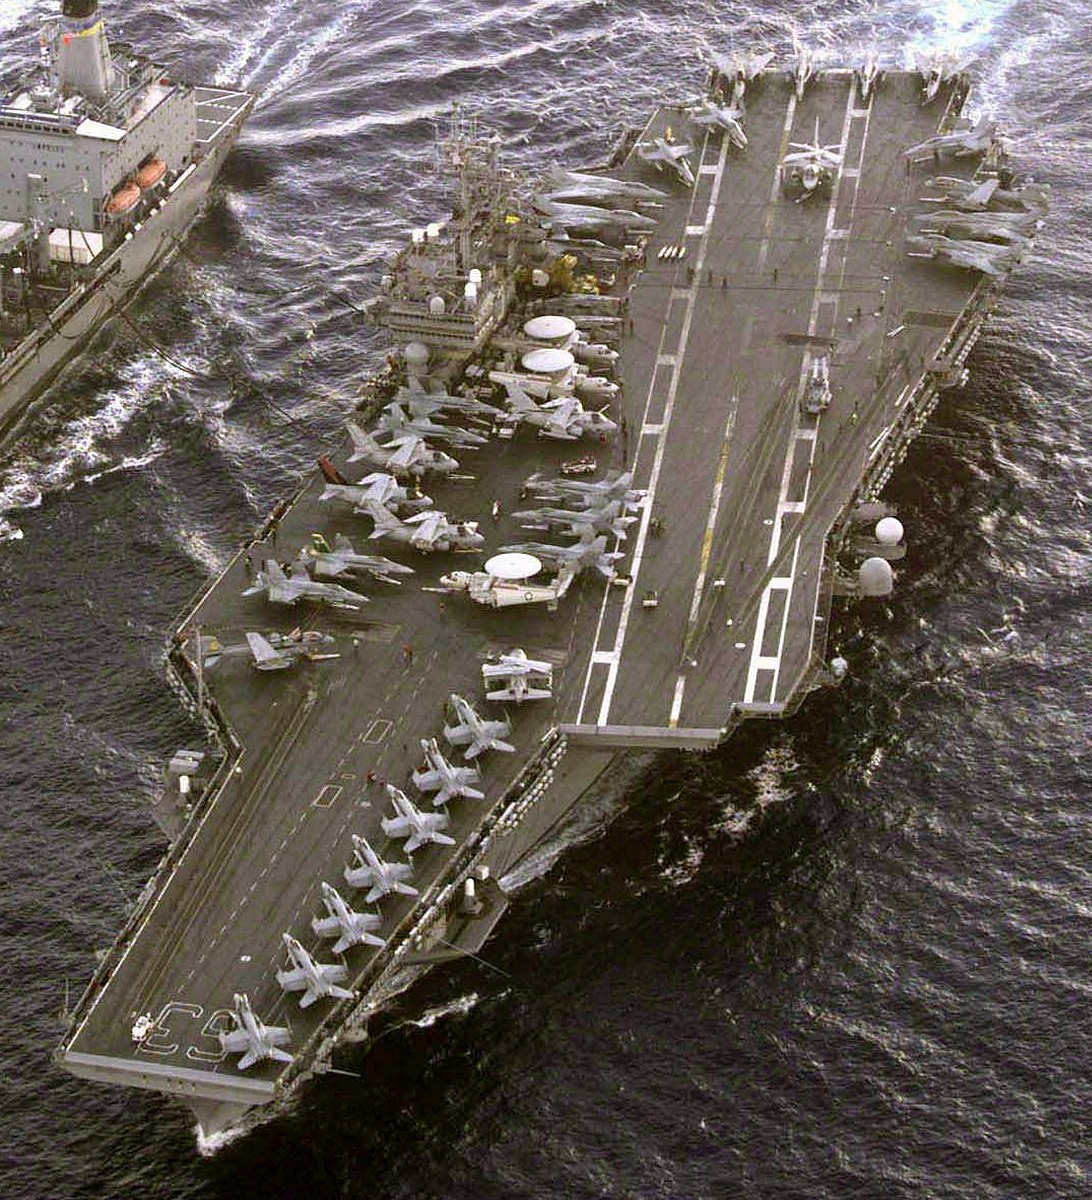 cv-63 uss kitty hawk aircraft carrier air wing cvw-5 us navy 224